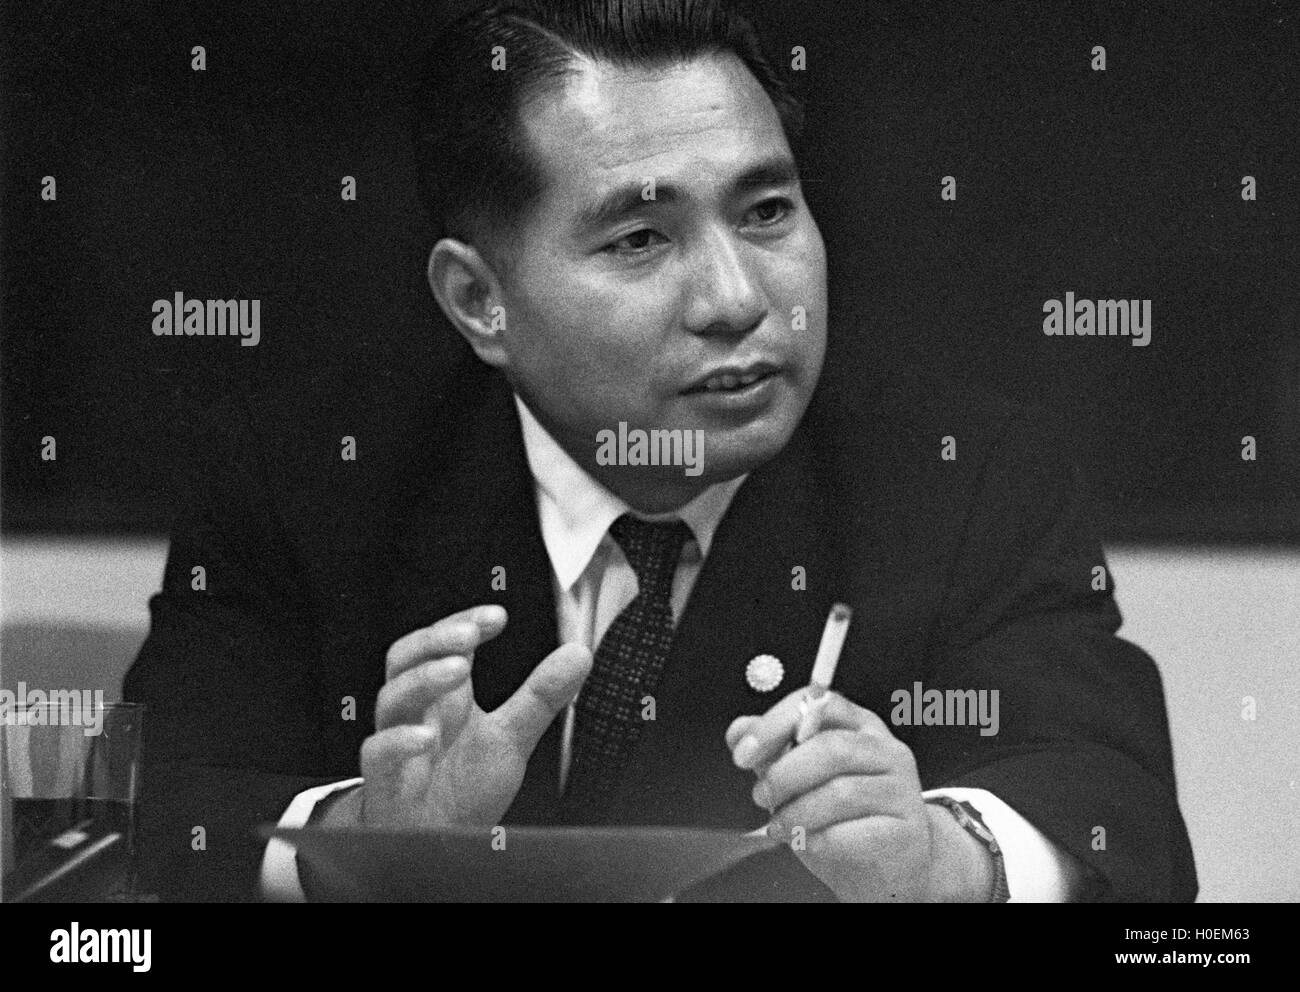 Daisaku Ikeda, former President of Soka Gakkai, the controversial new religious movement. This photograph was taken in July 1963 Stock Photo